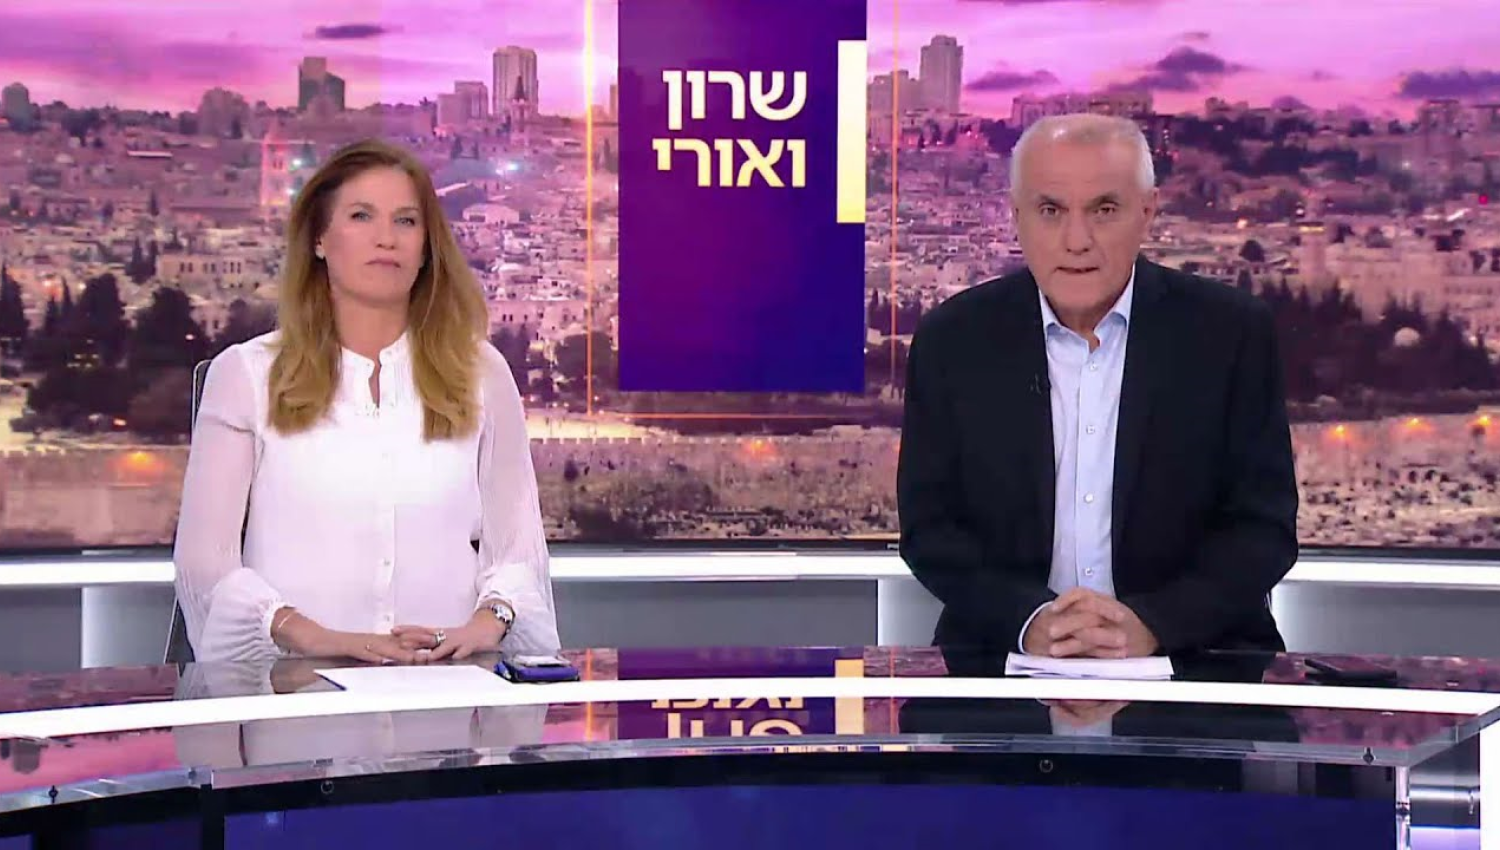 "سيناريو يوم القيامة": هكذا قرأ الإعلام العبري استراتيجية وحدة الساحات